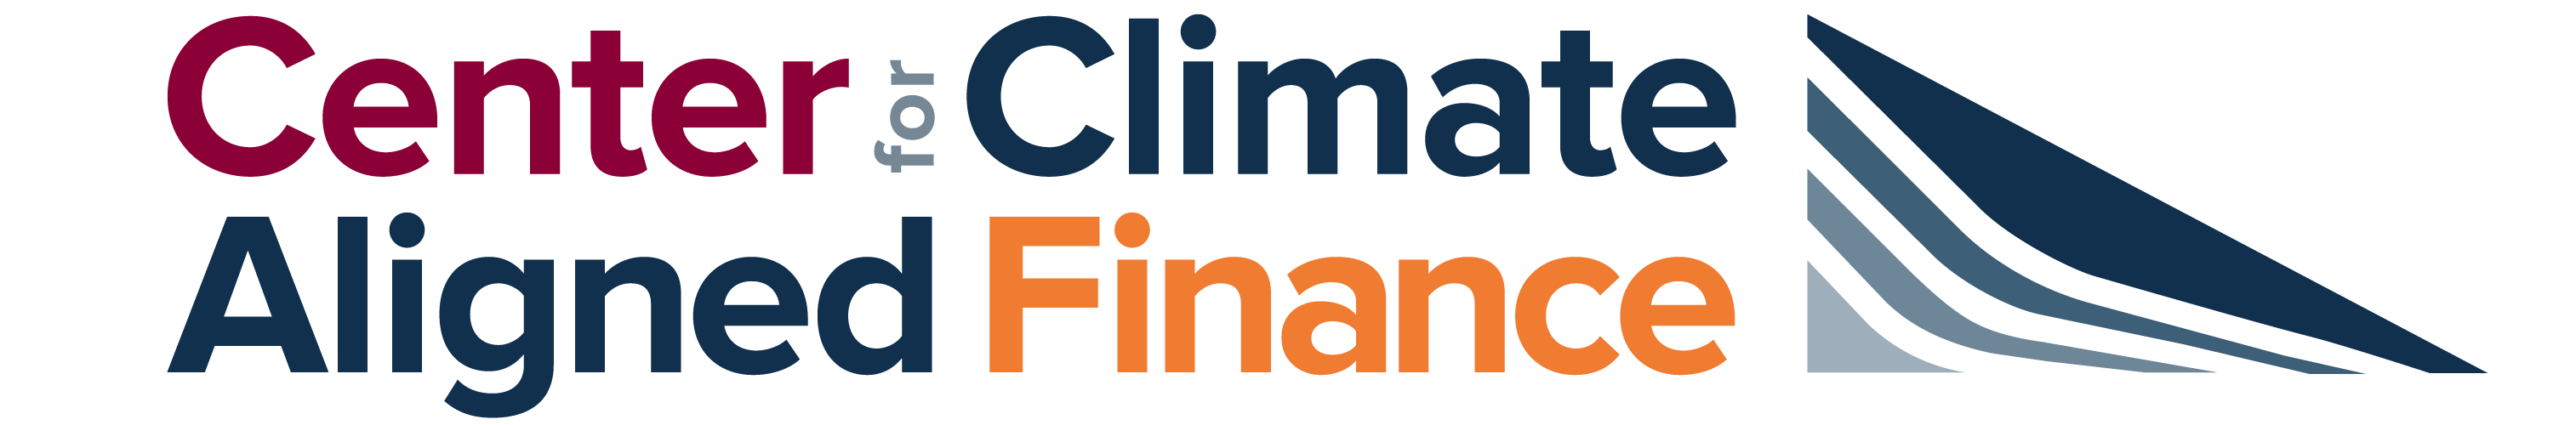 center for climate aligned finance logo